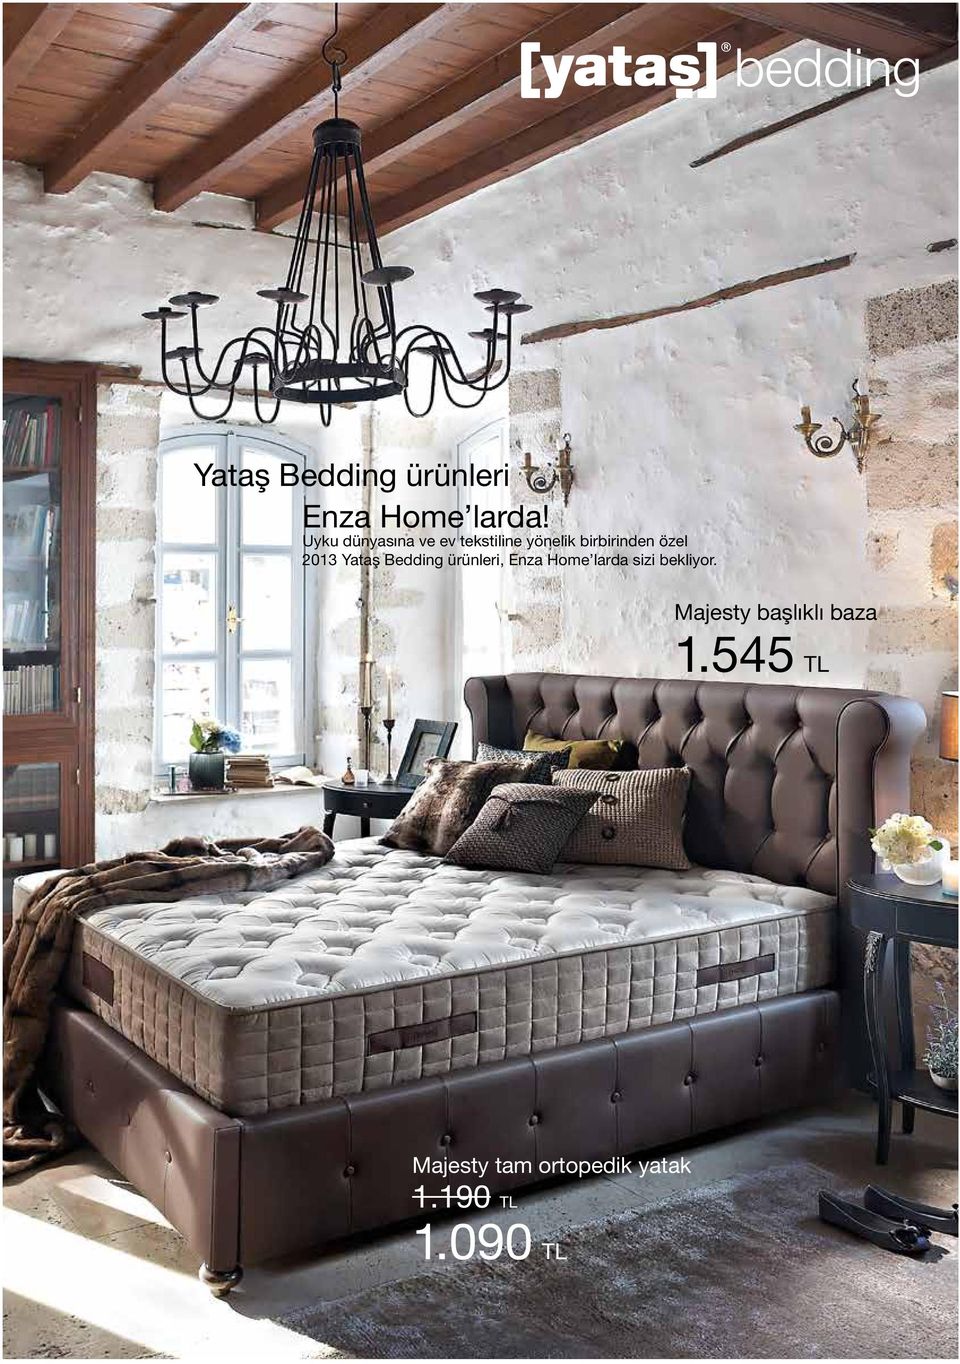 2013 Yataş Bedding ürünleri, Enza Home larda sizi bekliyor.